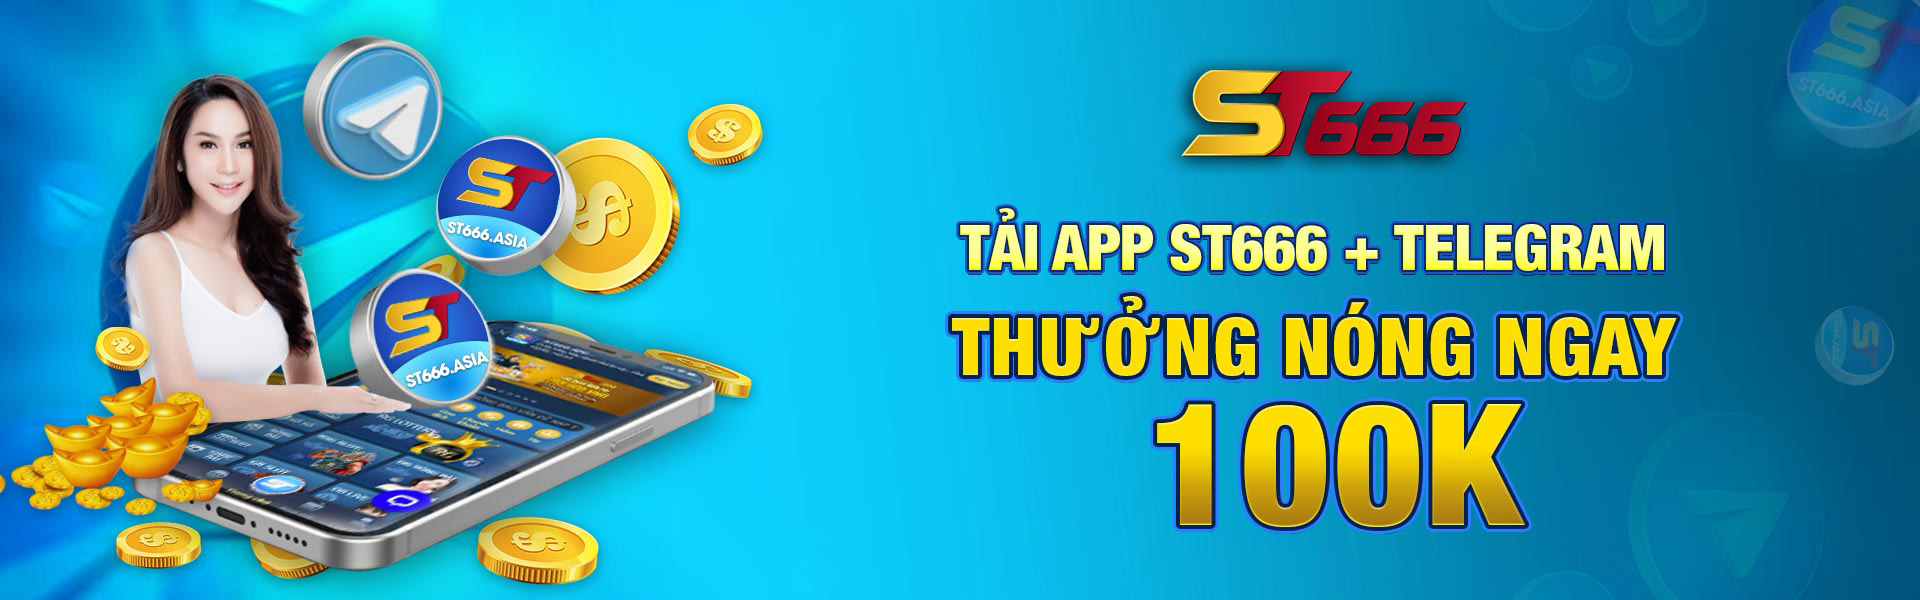 tai-ap-st666-telegram-thuong-100k-1